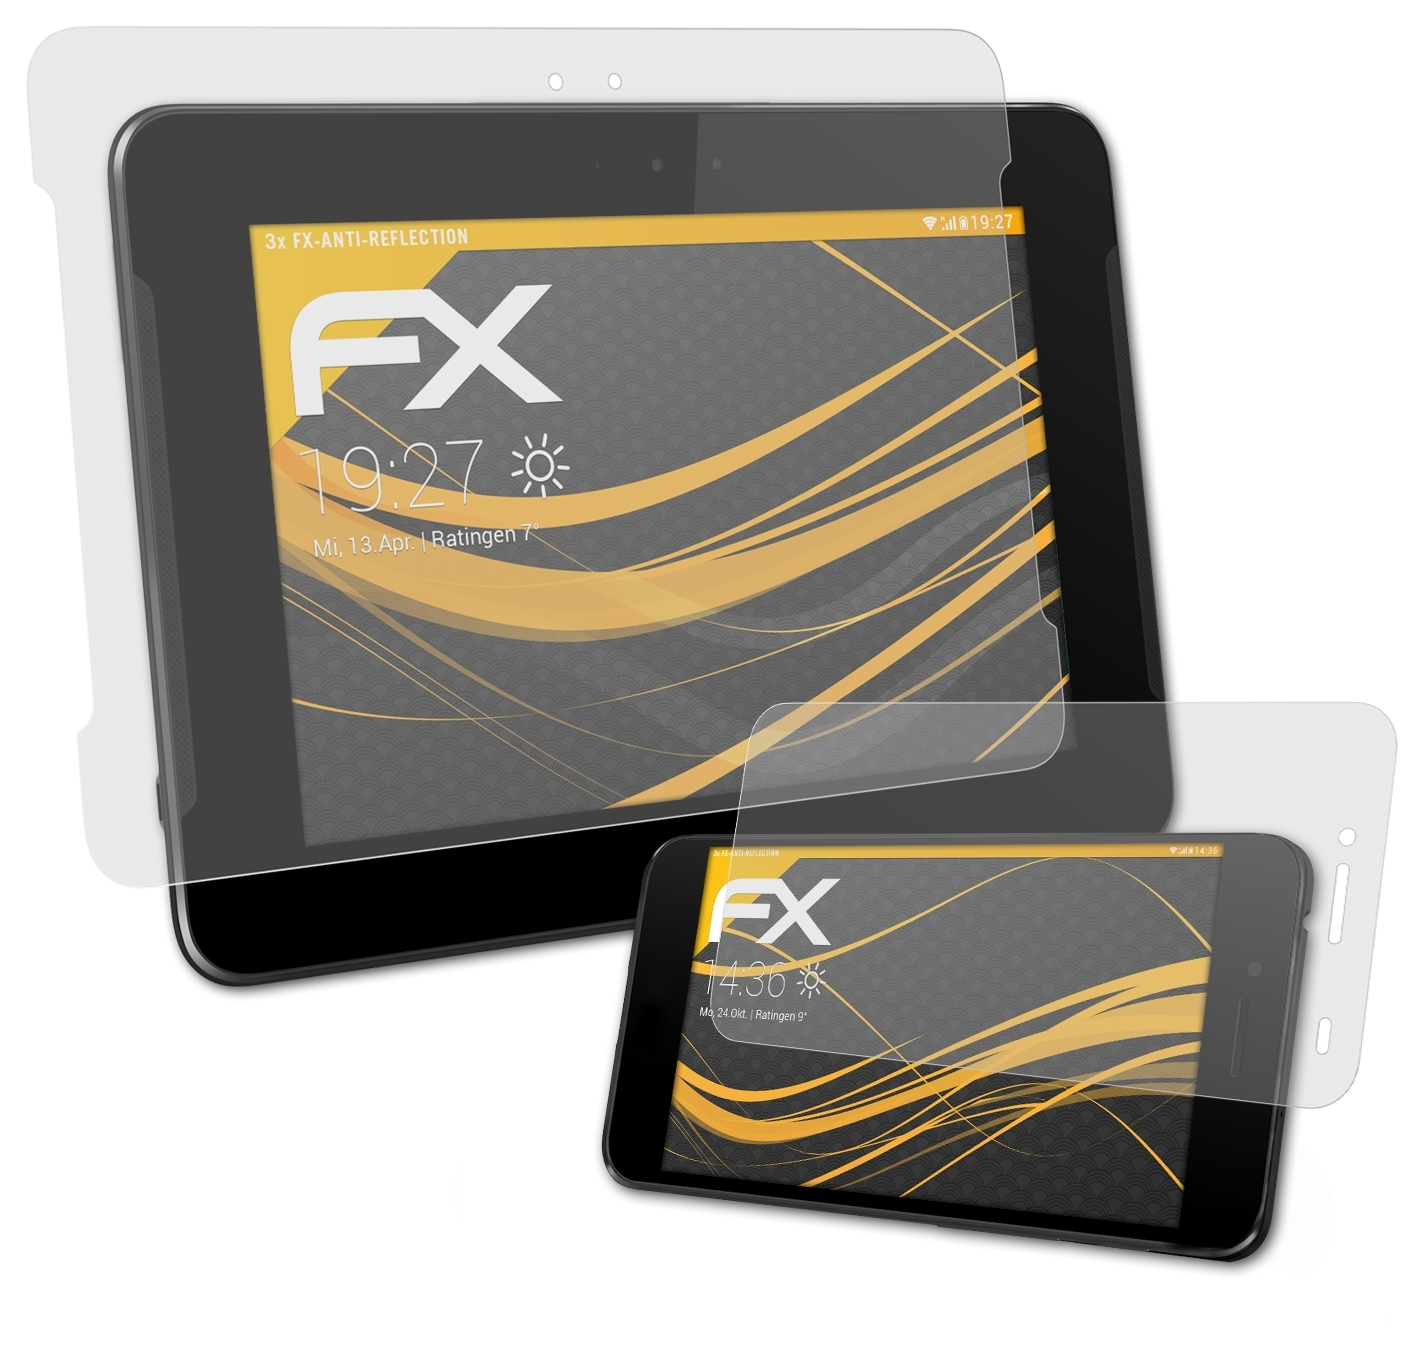 ATFOLIX 3x FX-Antireflex Displayschutz(für Asus PadFone S)